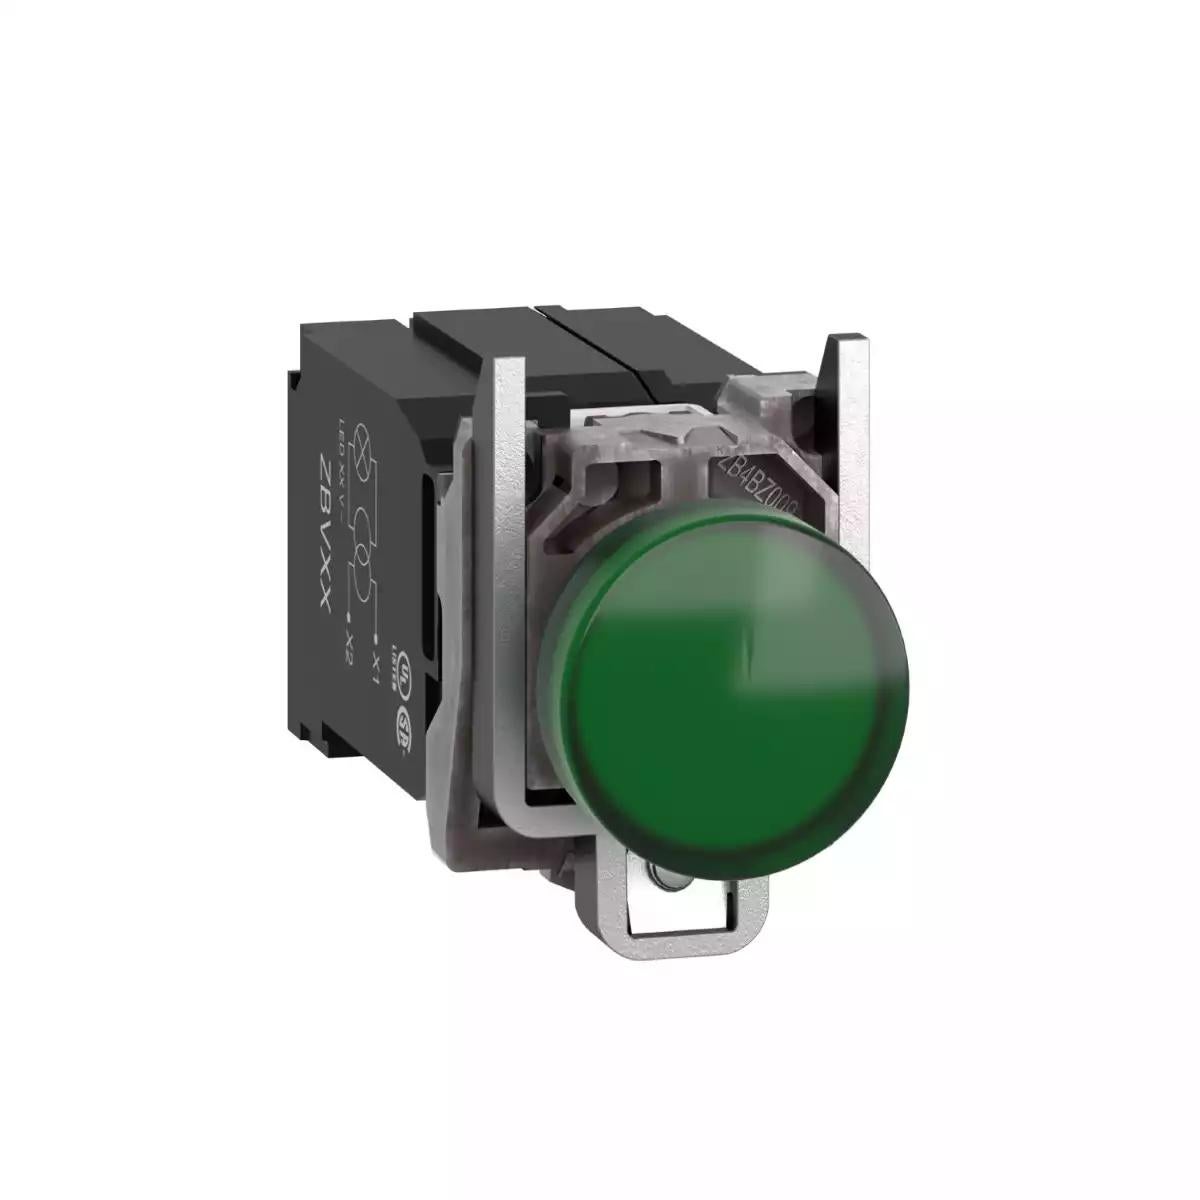 Pilot light, Harmony XB4,metal, green, 22mm, universal LED, plain lens, 400V AC